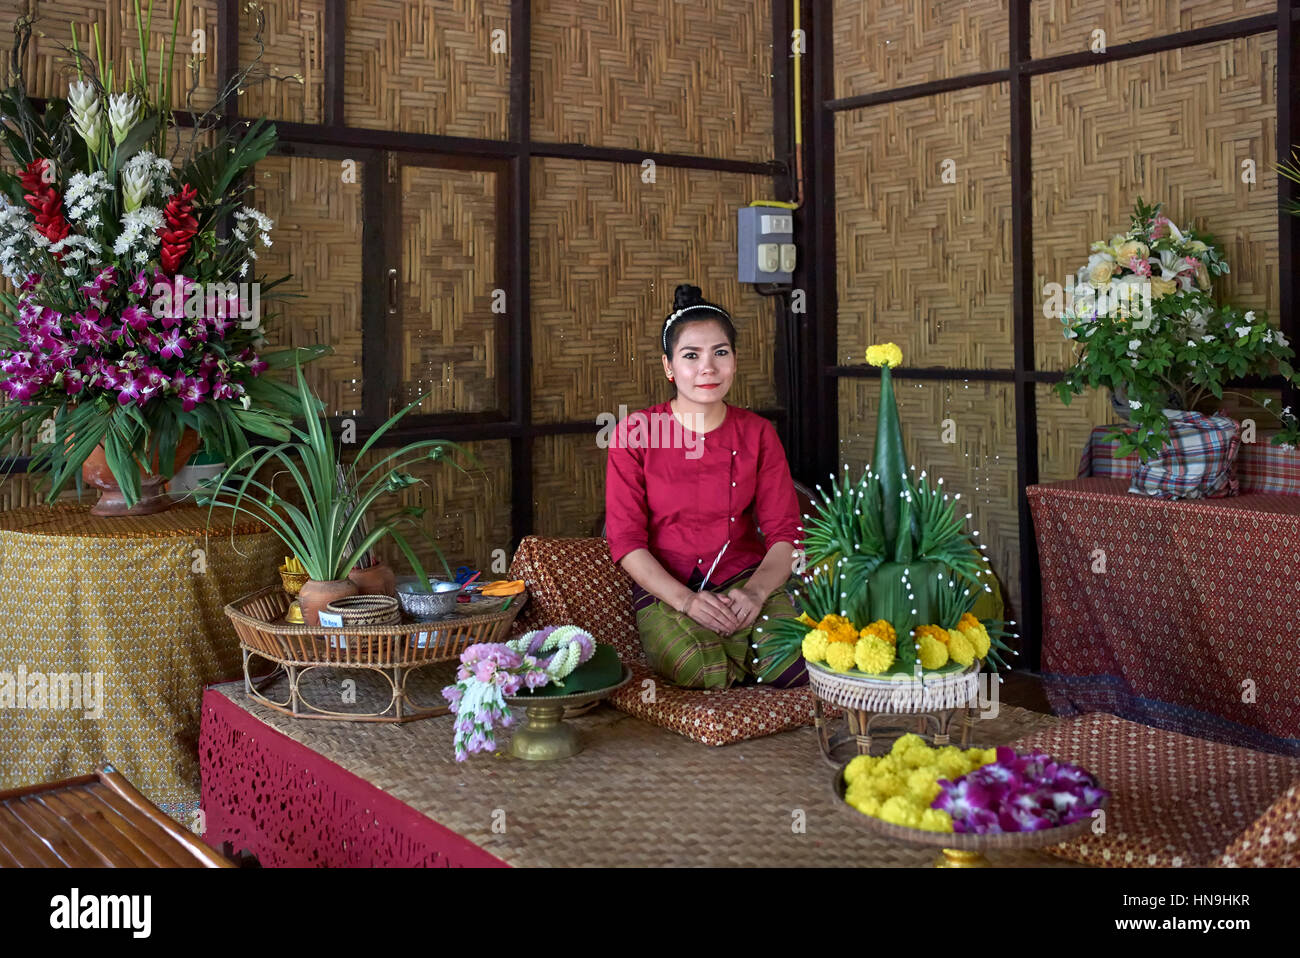 Thailandia interni casa tradizionale con la donna tailandese in abito tradizionale. Centro di arte e cultura thailandese. Thailandia Sud-est asiatico Foto Stock